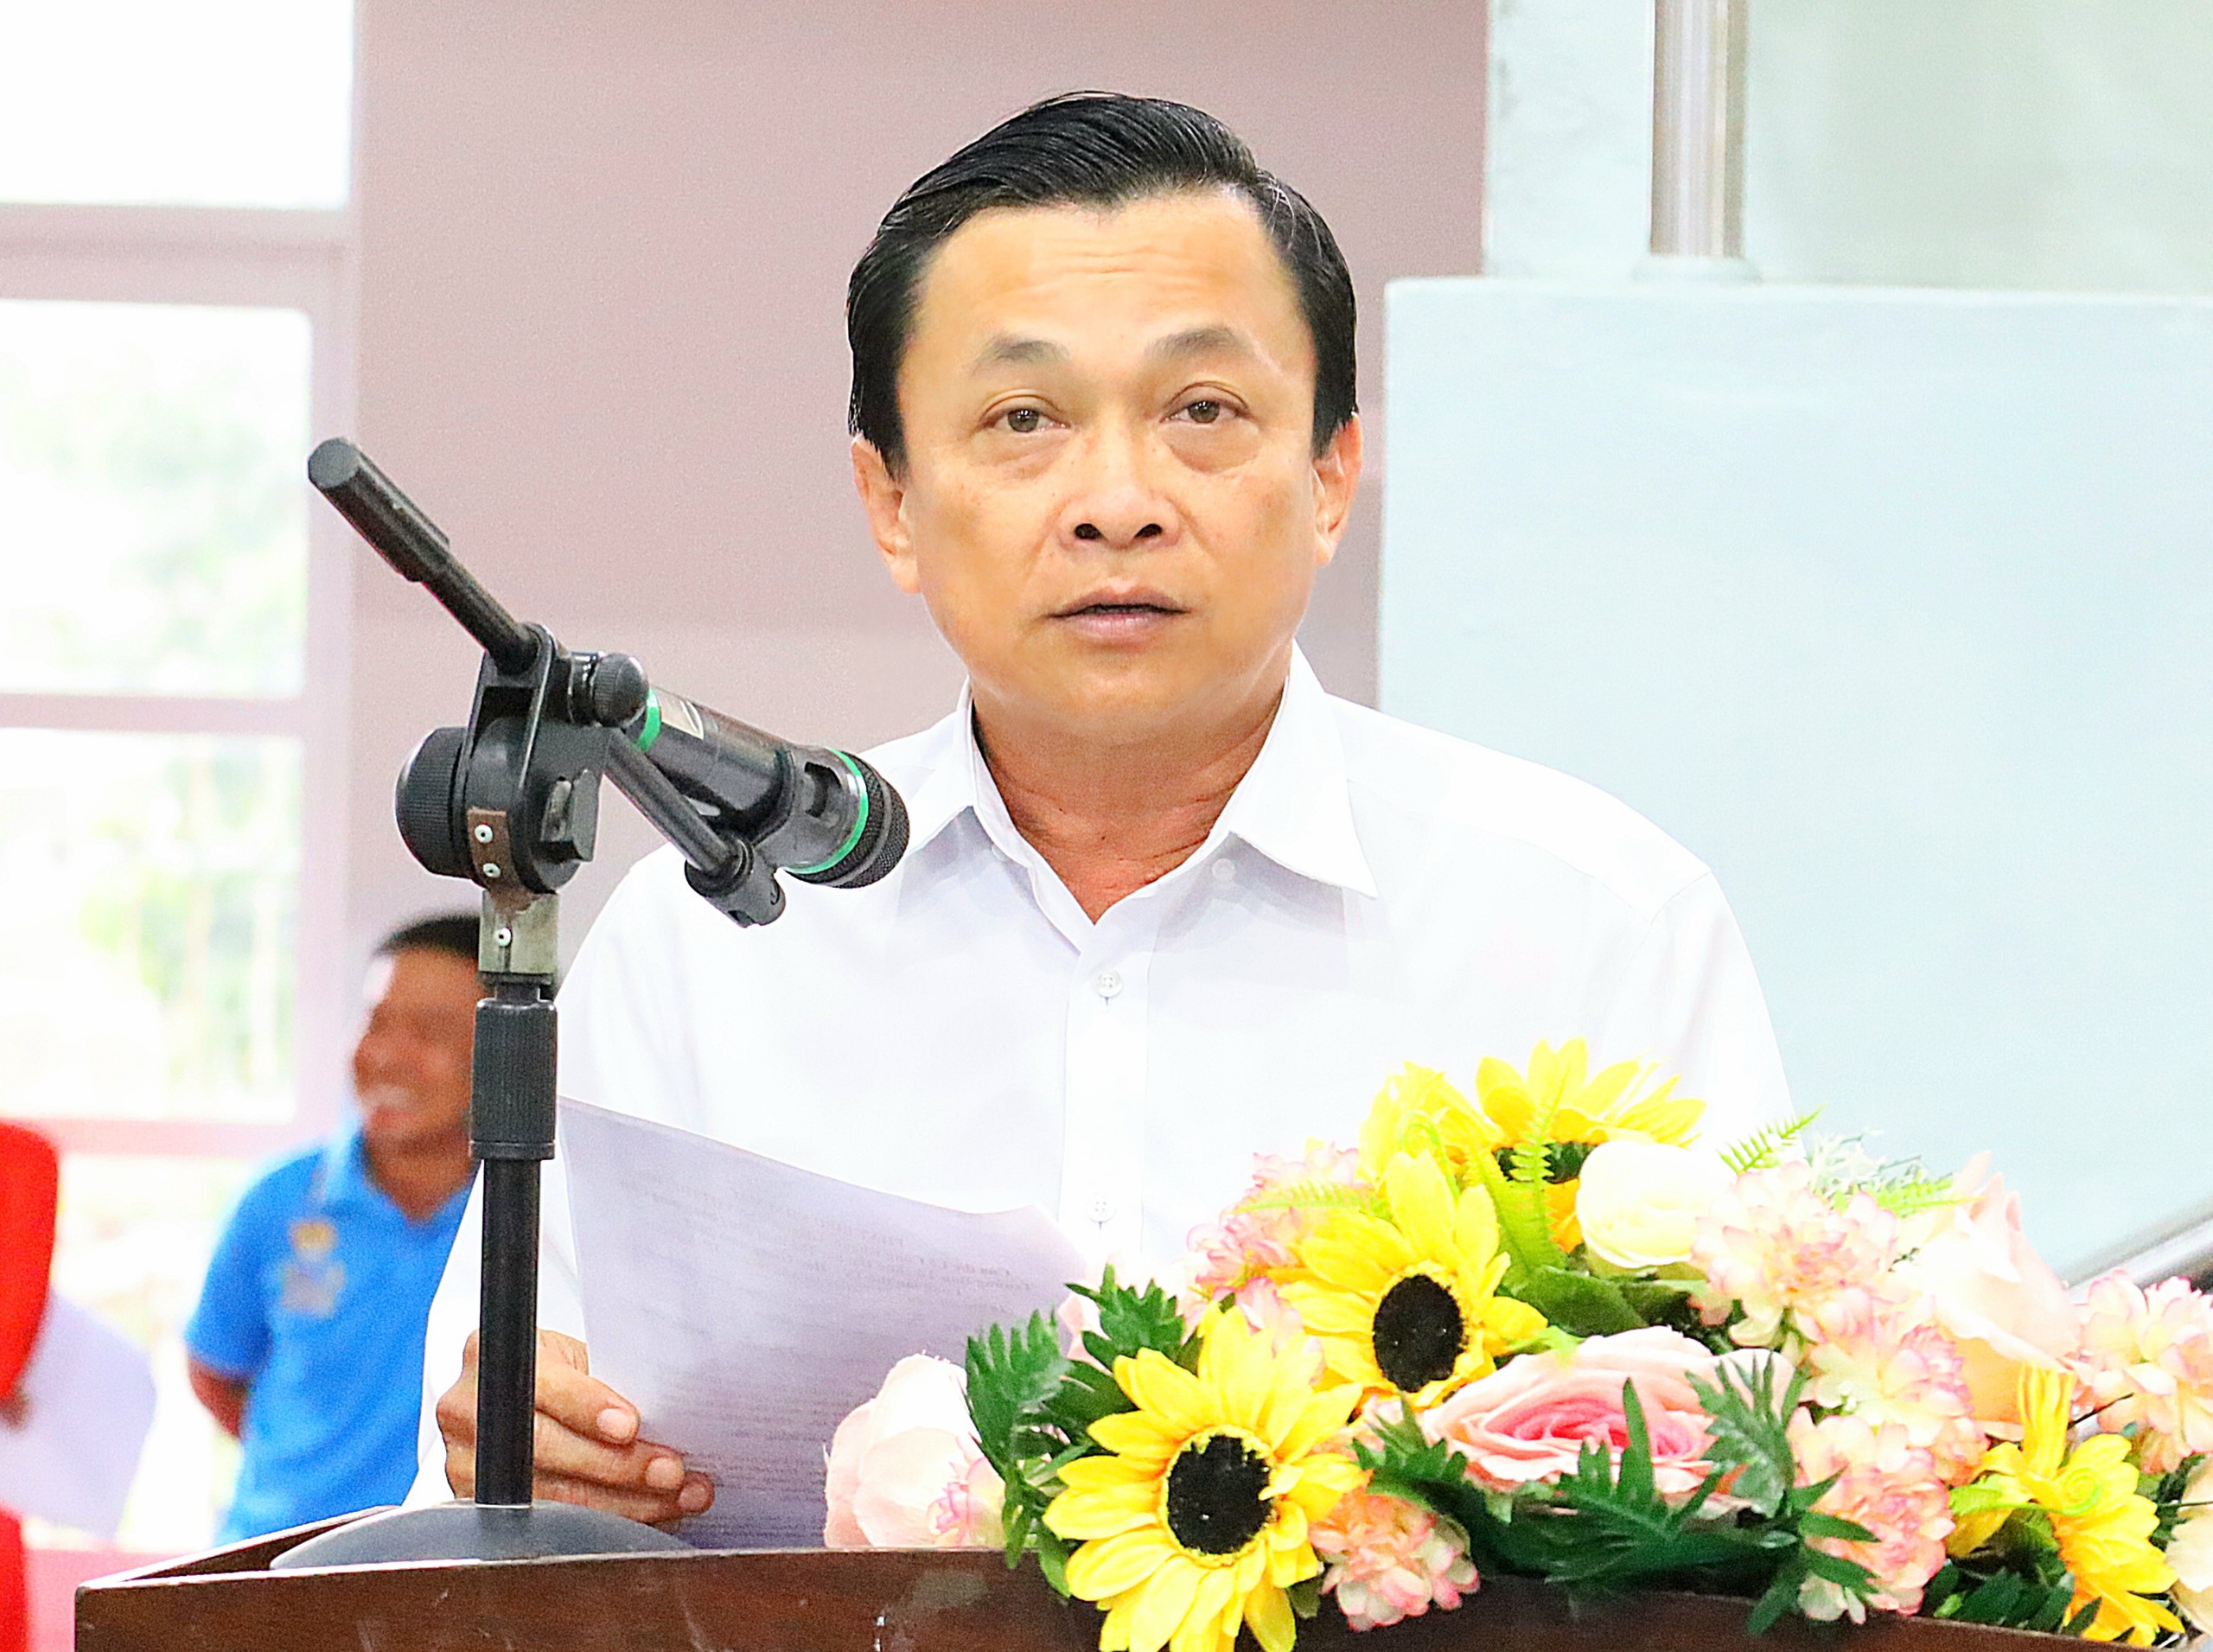 Ông Lê Công Khanh - Giám đốc Sở Văn hóa, Thể thao và Du lịch tỉnh Hậu Giang, Phó Trưởng Ban Tổ chức Đại hội Thể thao ĐBSCL phát biểu chỉ đạo tại buổi lễ.